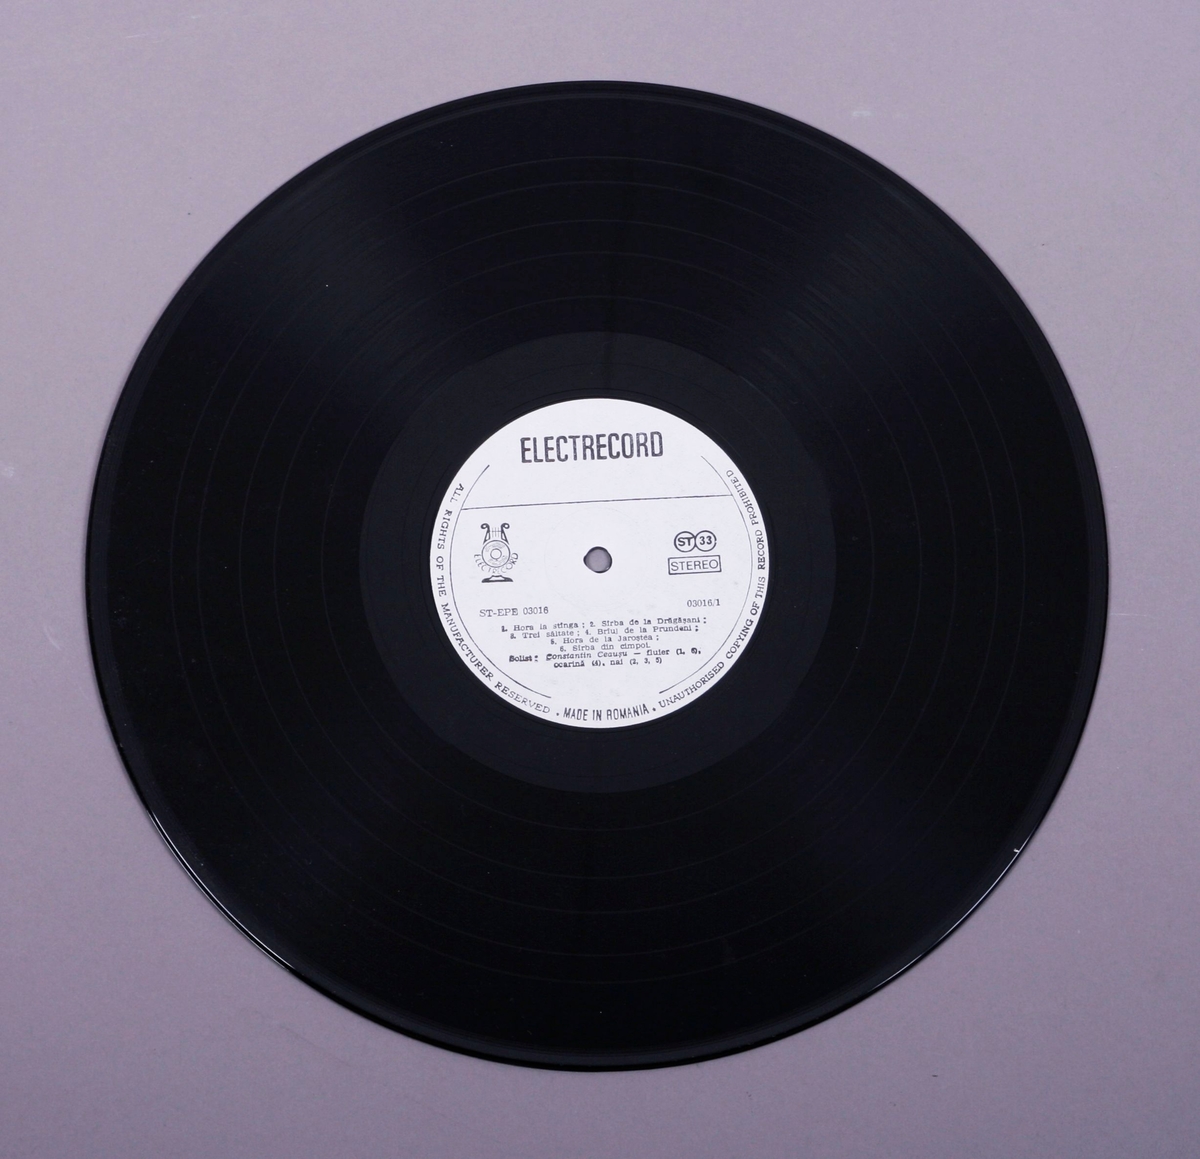 Grammofonplate i svart vinyl og plateomslag i papp. Plata ligger i en plastomme.